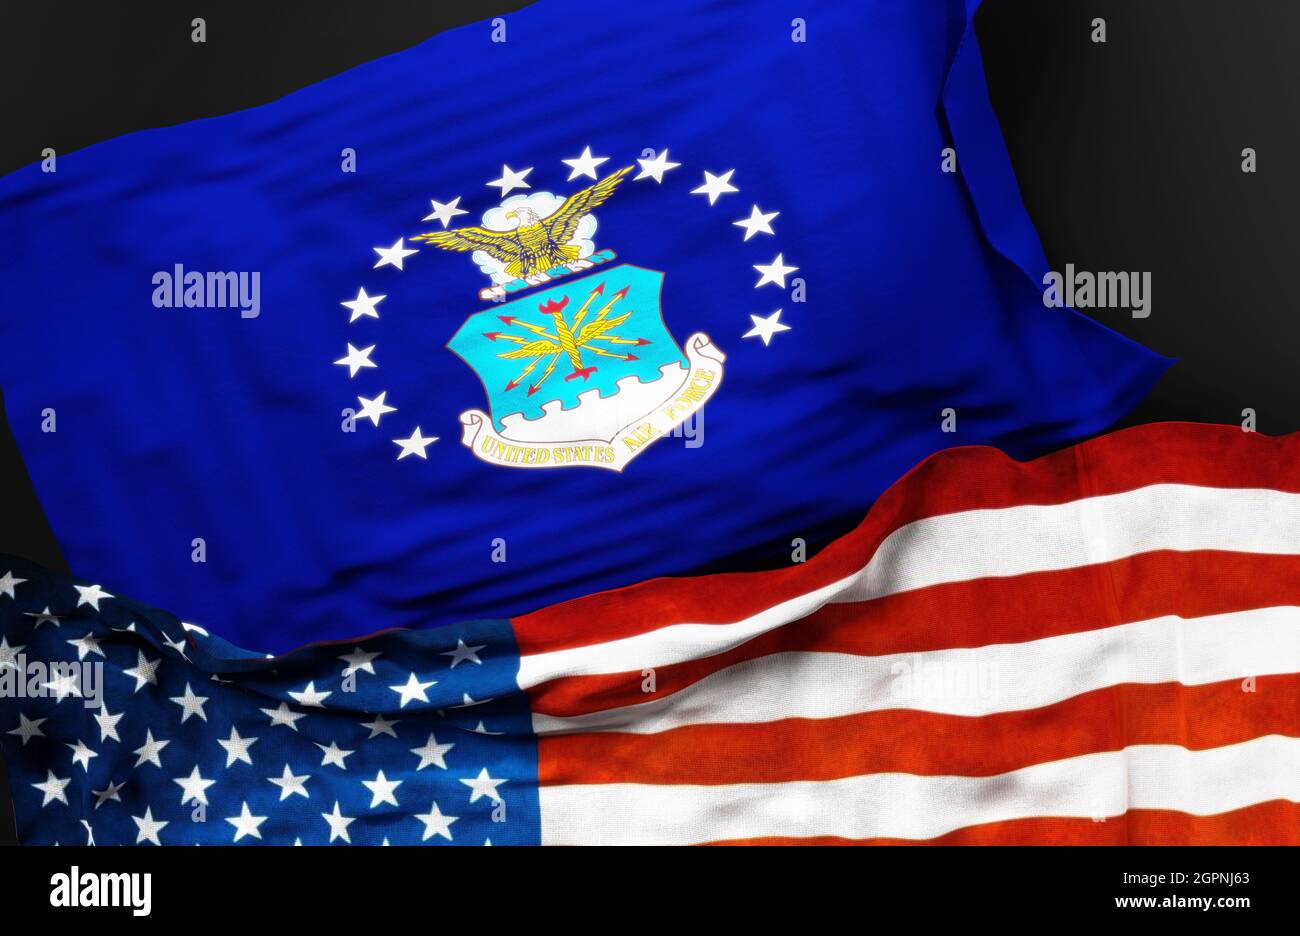 Flagge der United States Air Force zusammen mit einer Flagge der Vereinigten Staaten von Amerika als Symbol für eine Verbindung zwischen ihnen, 3d-Illustration Stockfoto